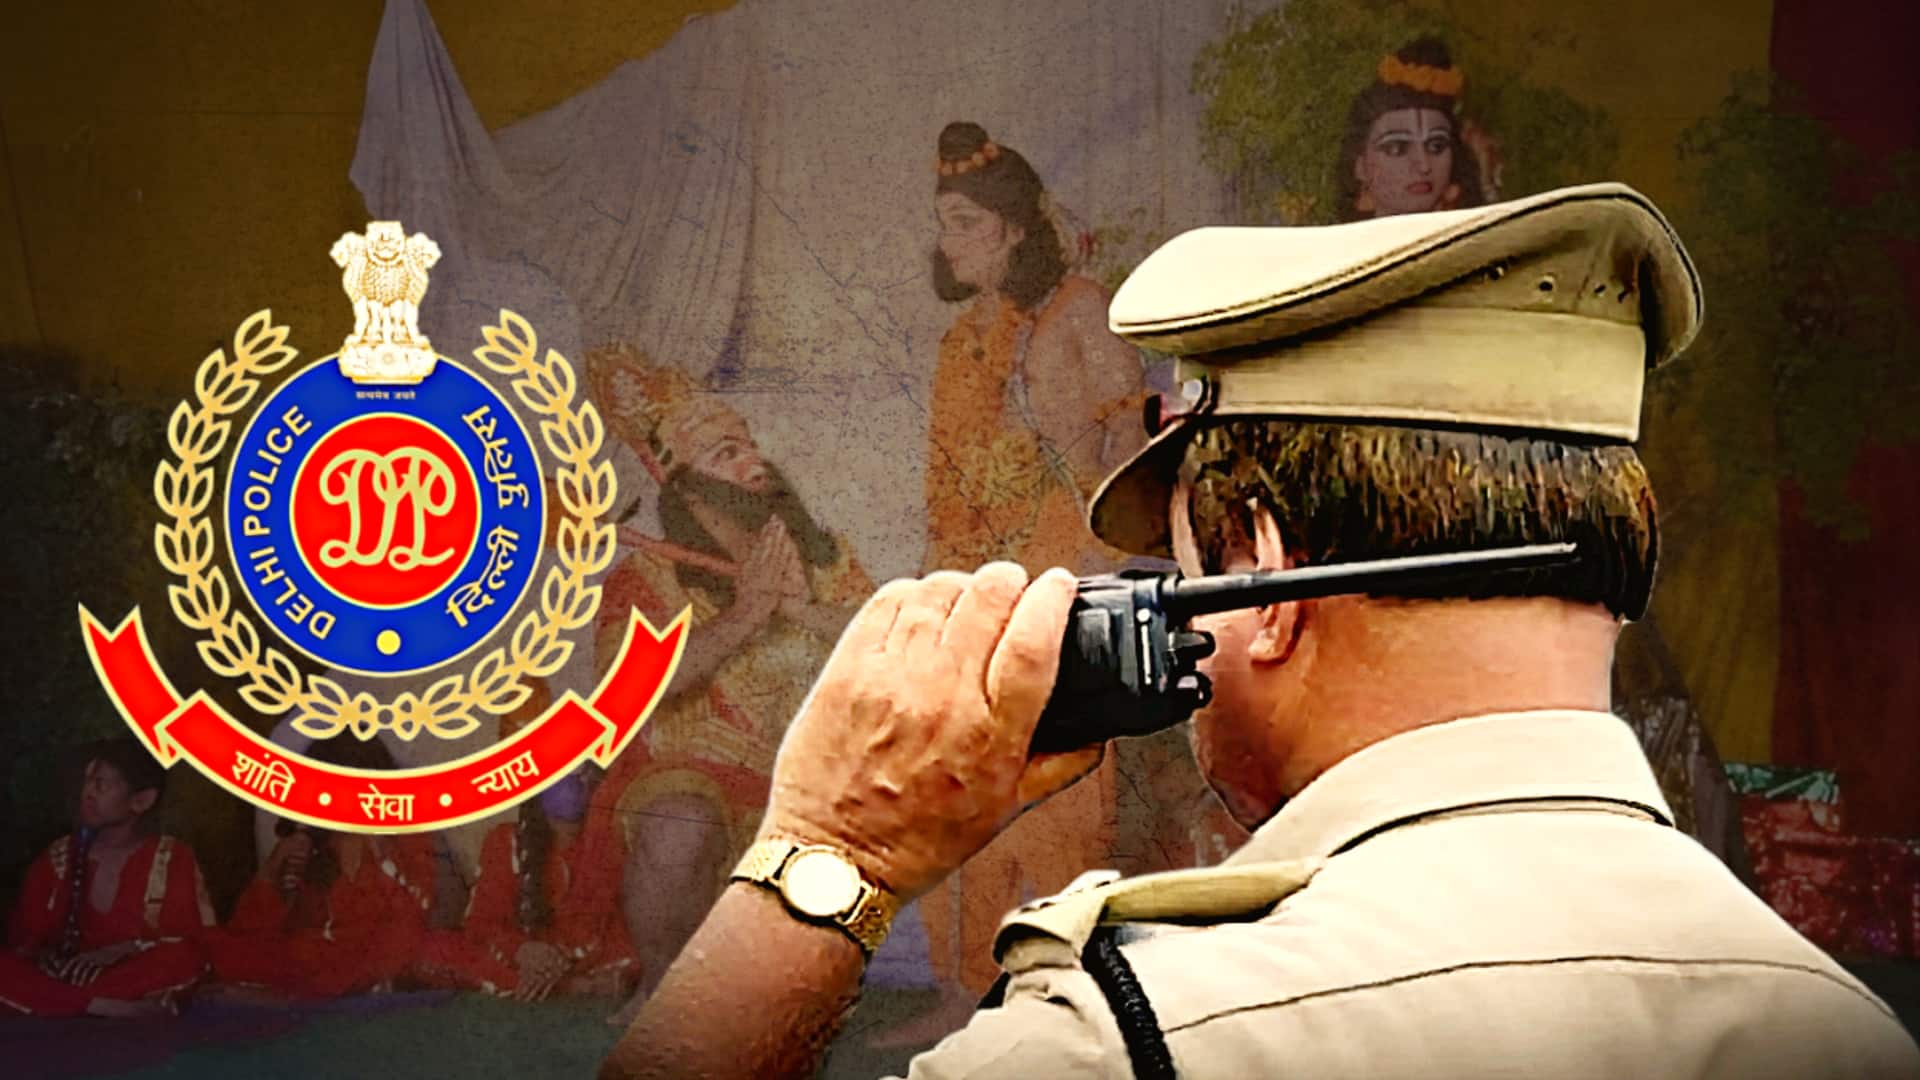 दिल्ली: दिनभर ड्यूटी के बाद रात में रामलीला में अभिनय करता है ये पुलिसकर्मी